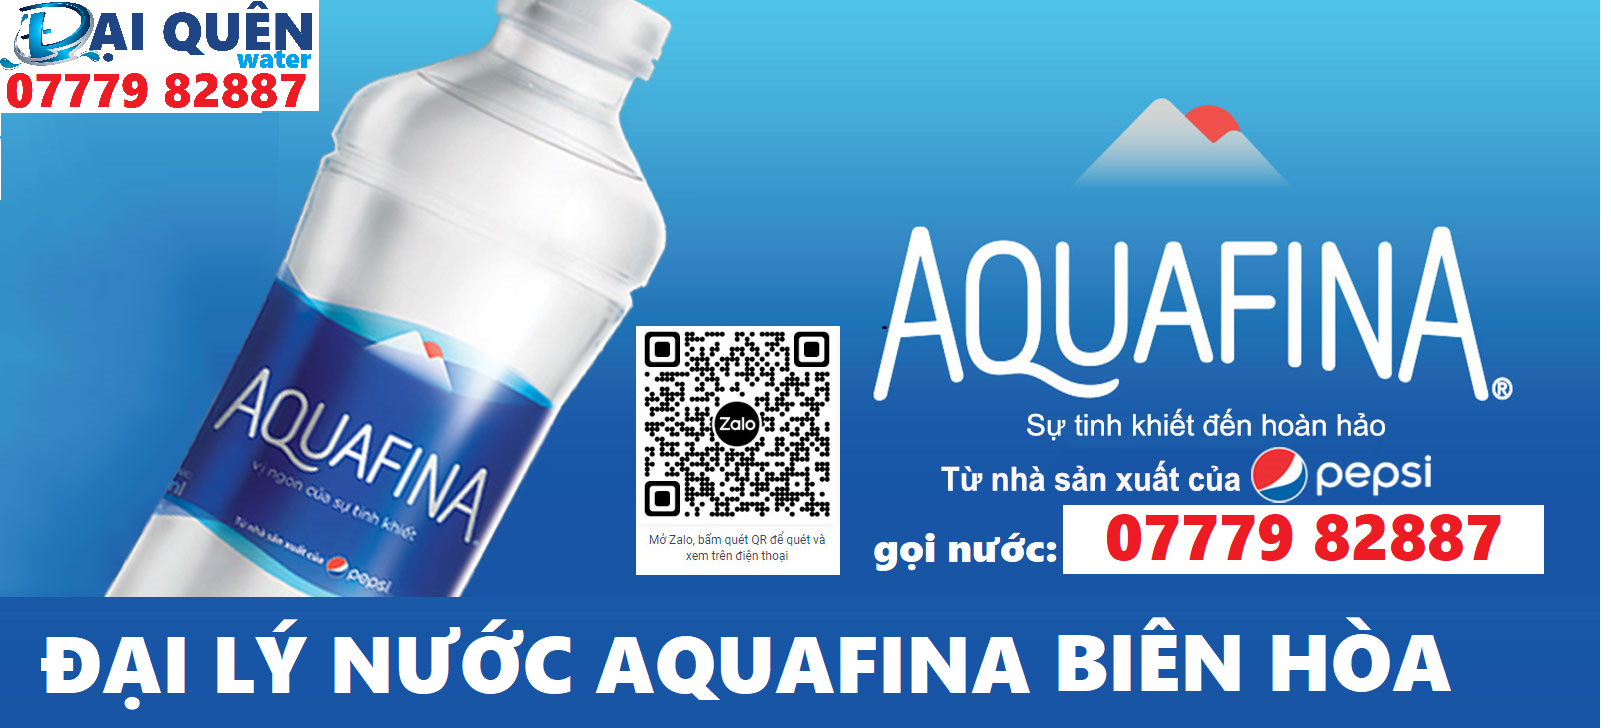 Đại lý nước tinh khiết Aquafina ở tại thành phố Biên Hòa, tỉnh Đồng Nai- ĐẠI QUÊN water 07779.82887